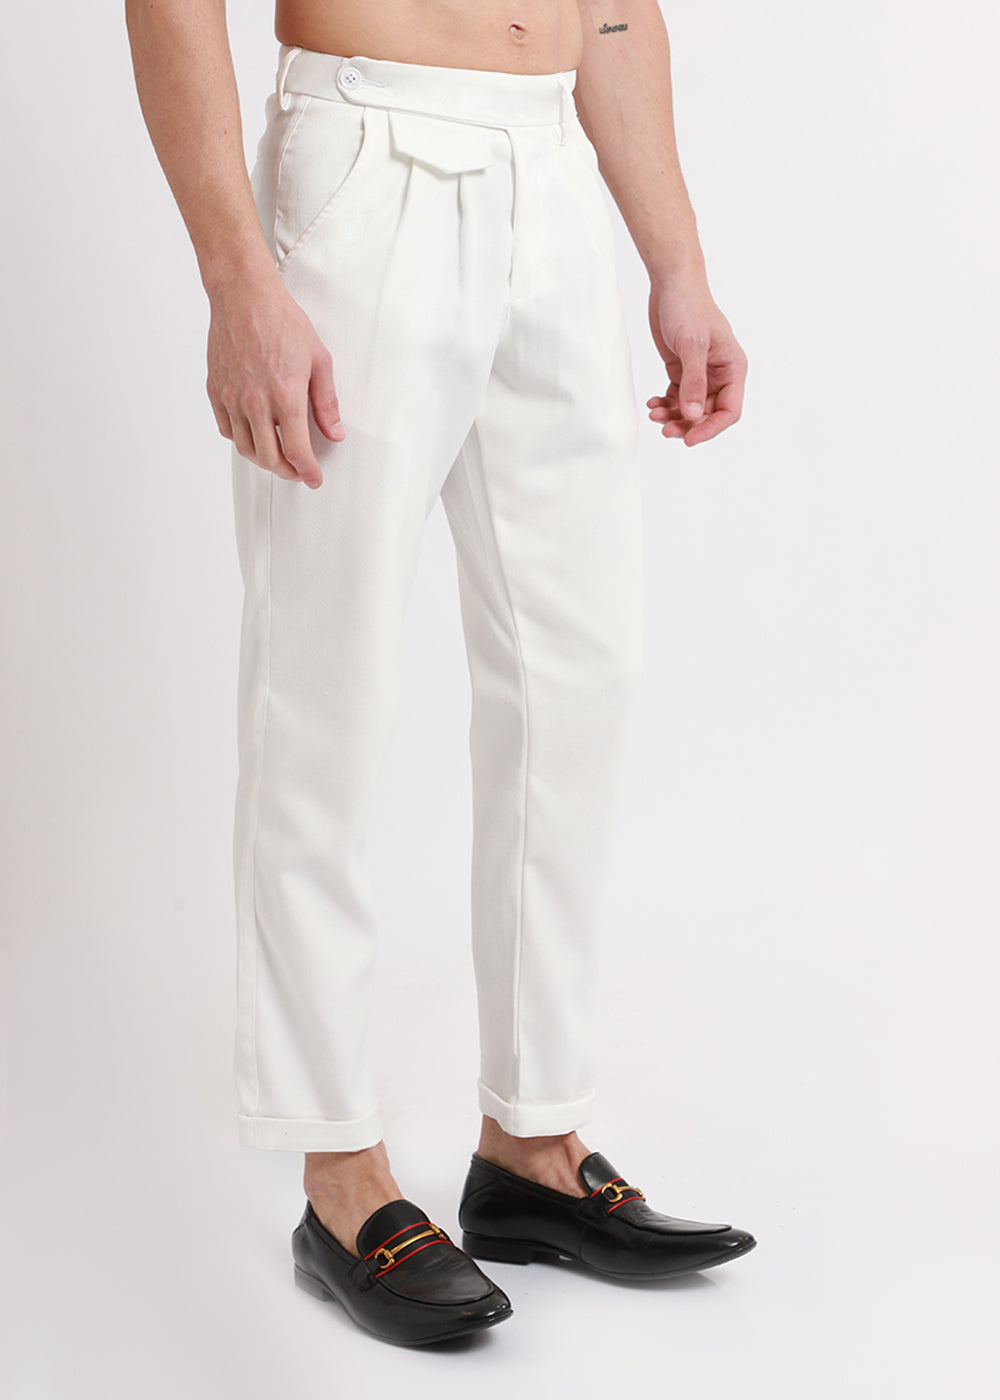 Ace White Korean Trouser